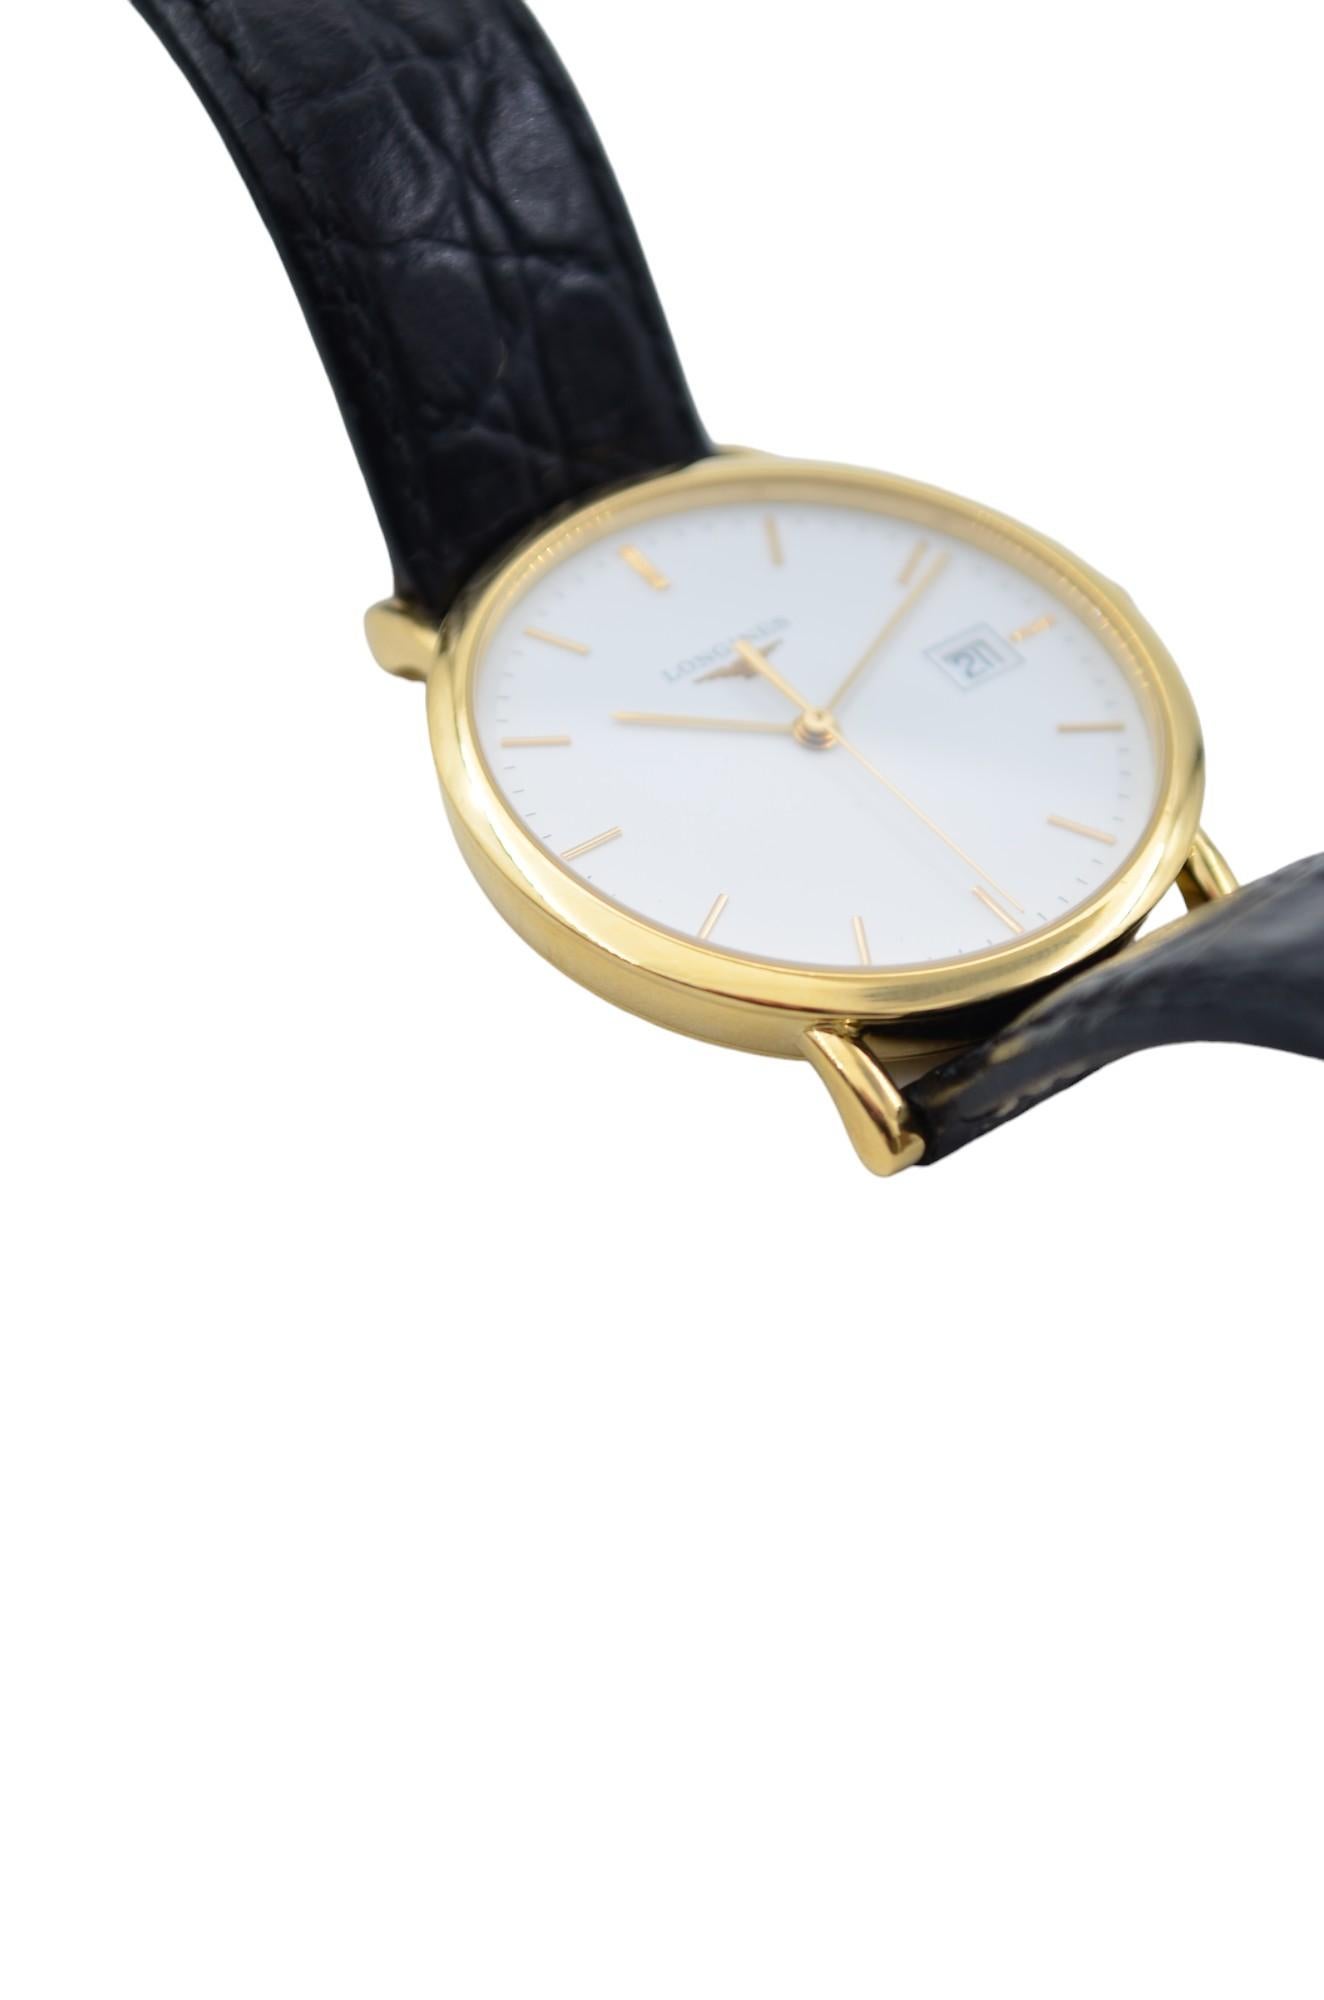 Longines Presence 34 White Dial Ladies' Watch Leather Strap Quartz L4.777.6.12.2 For Sale 9